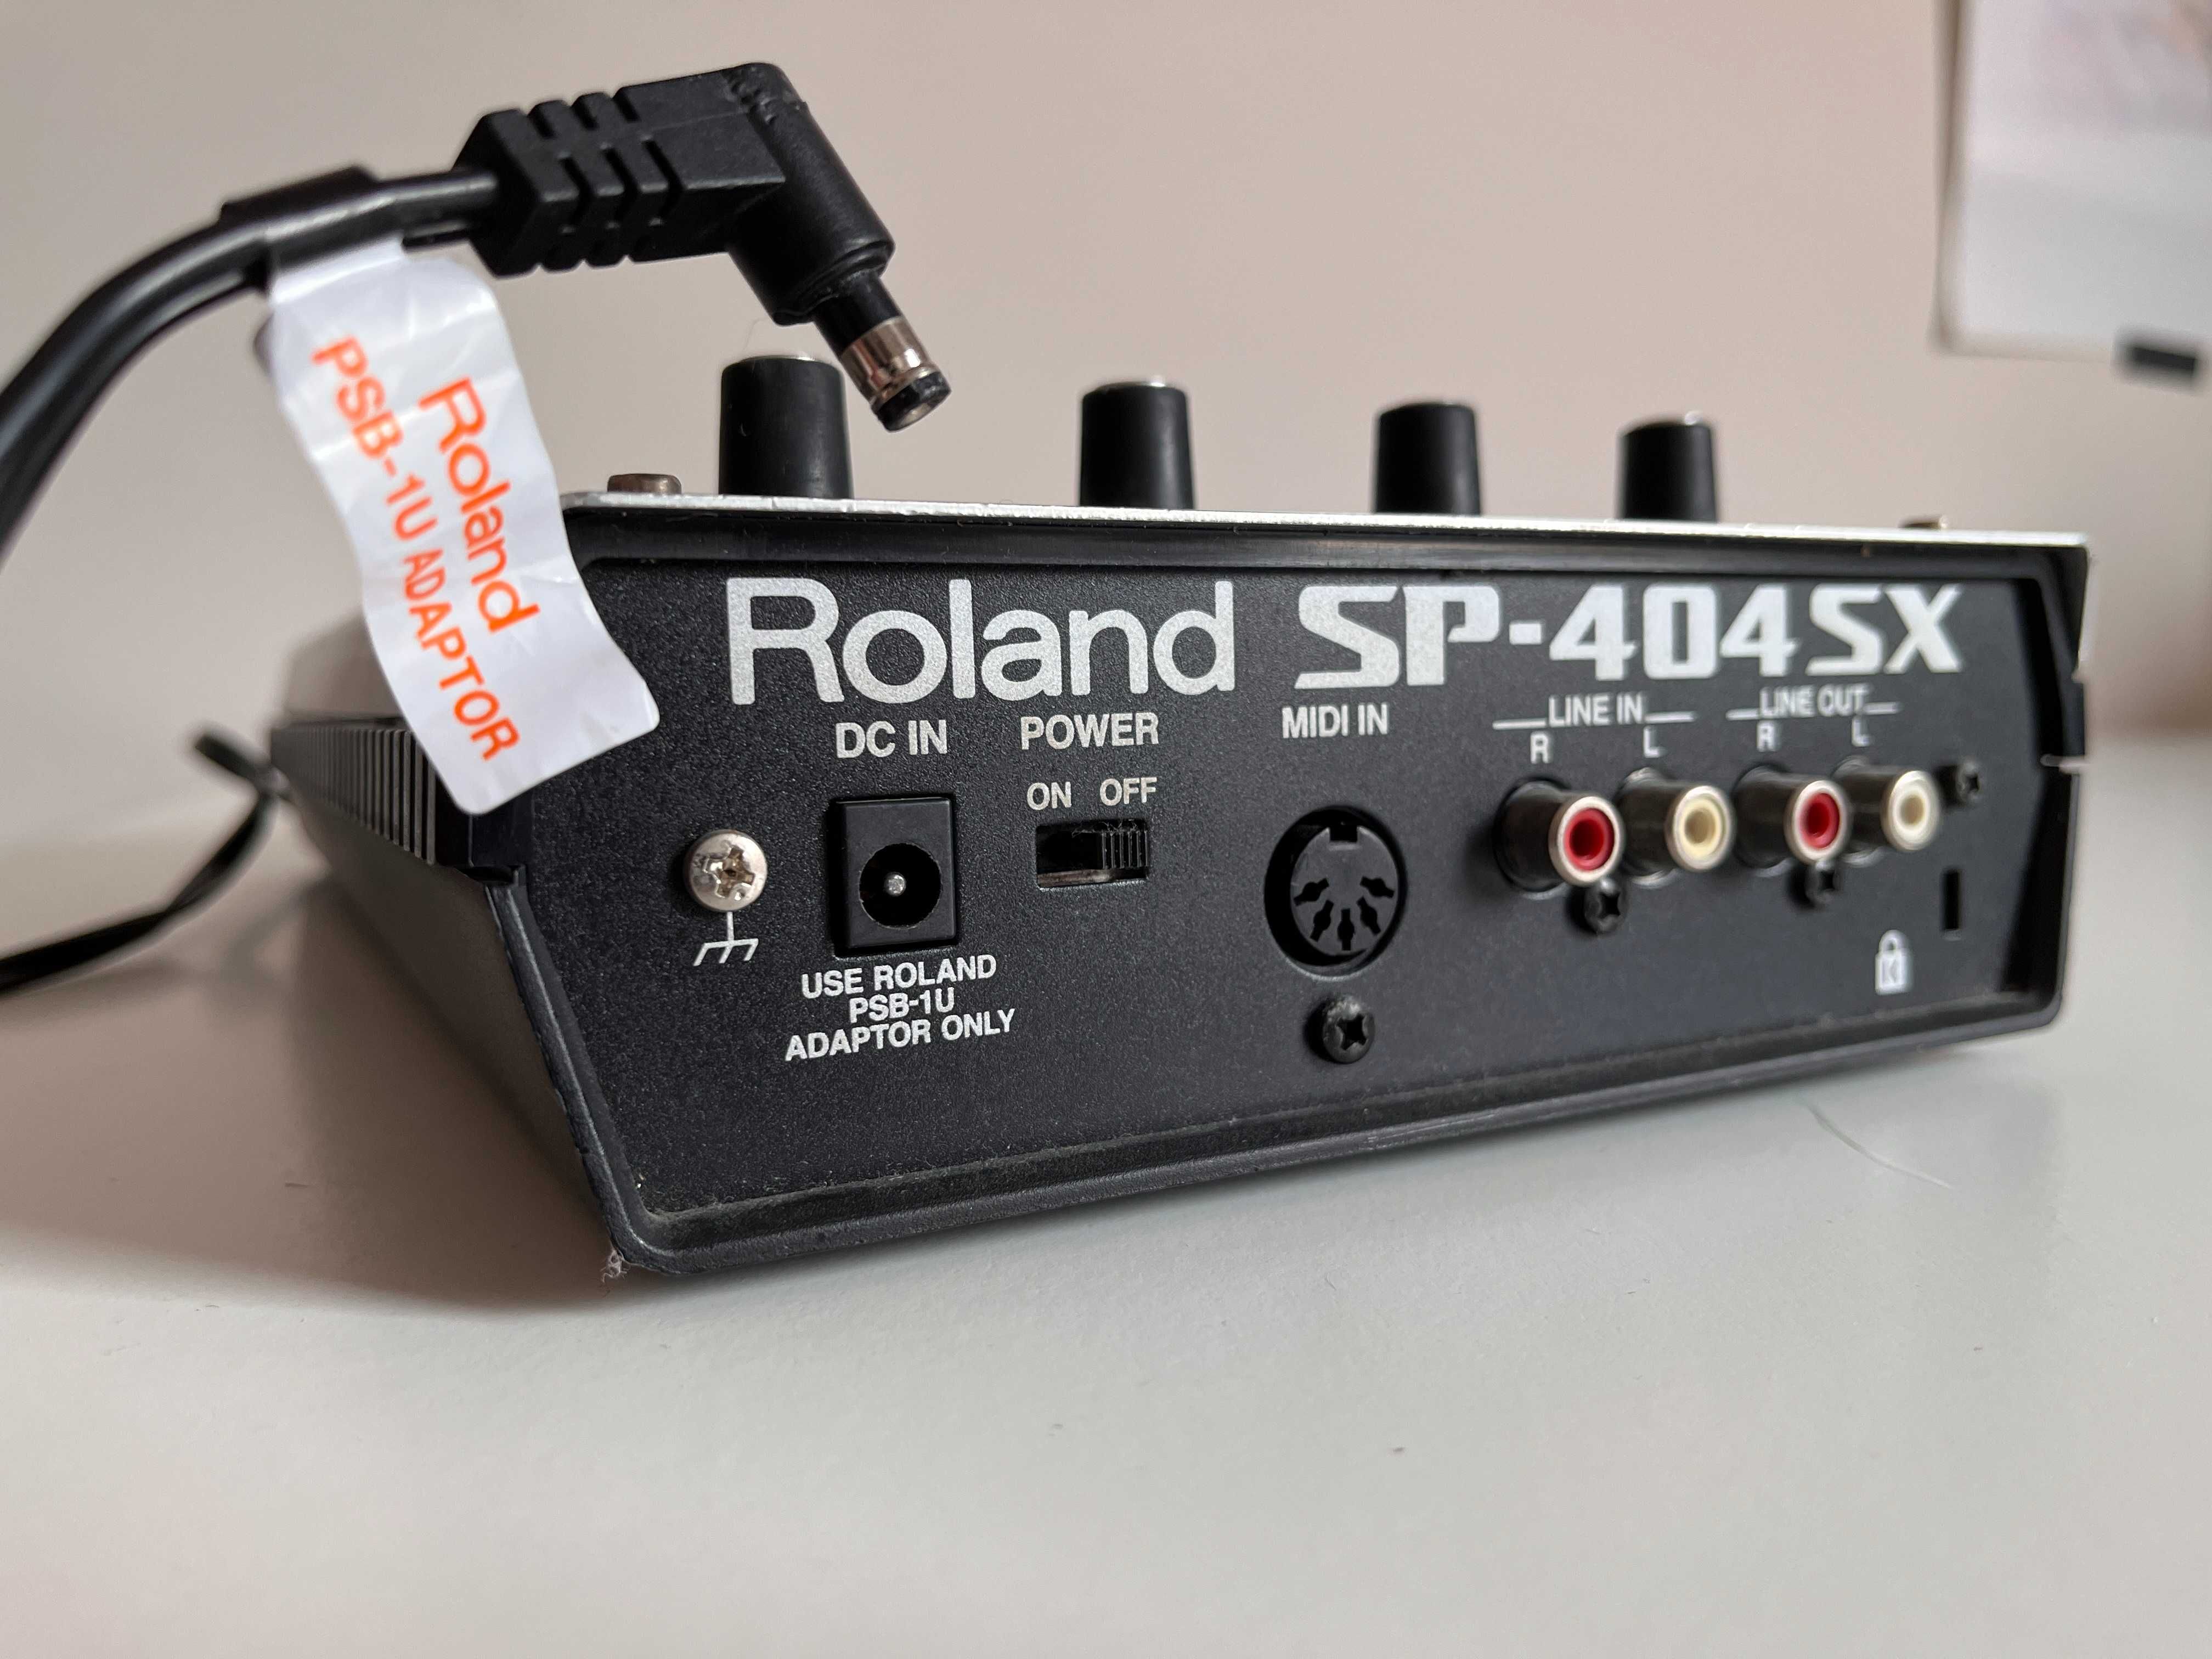 Sampler Roland SP-404 SX